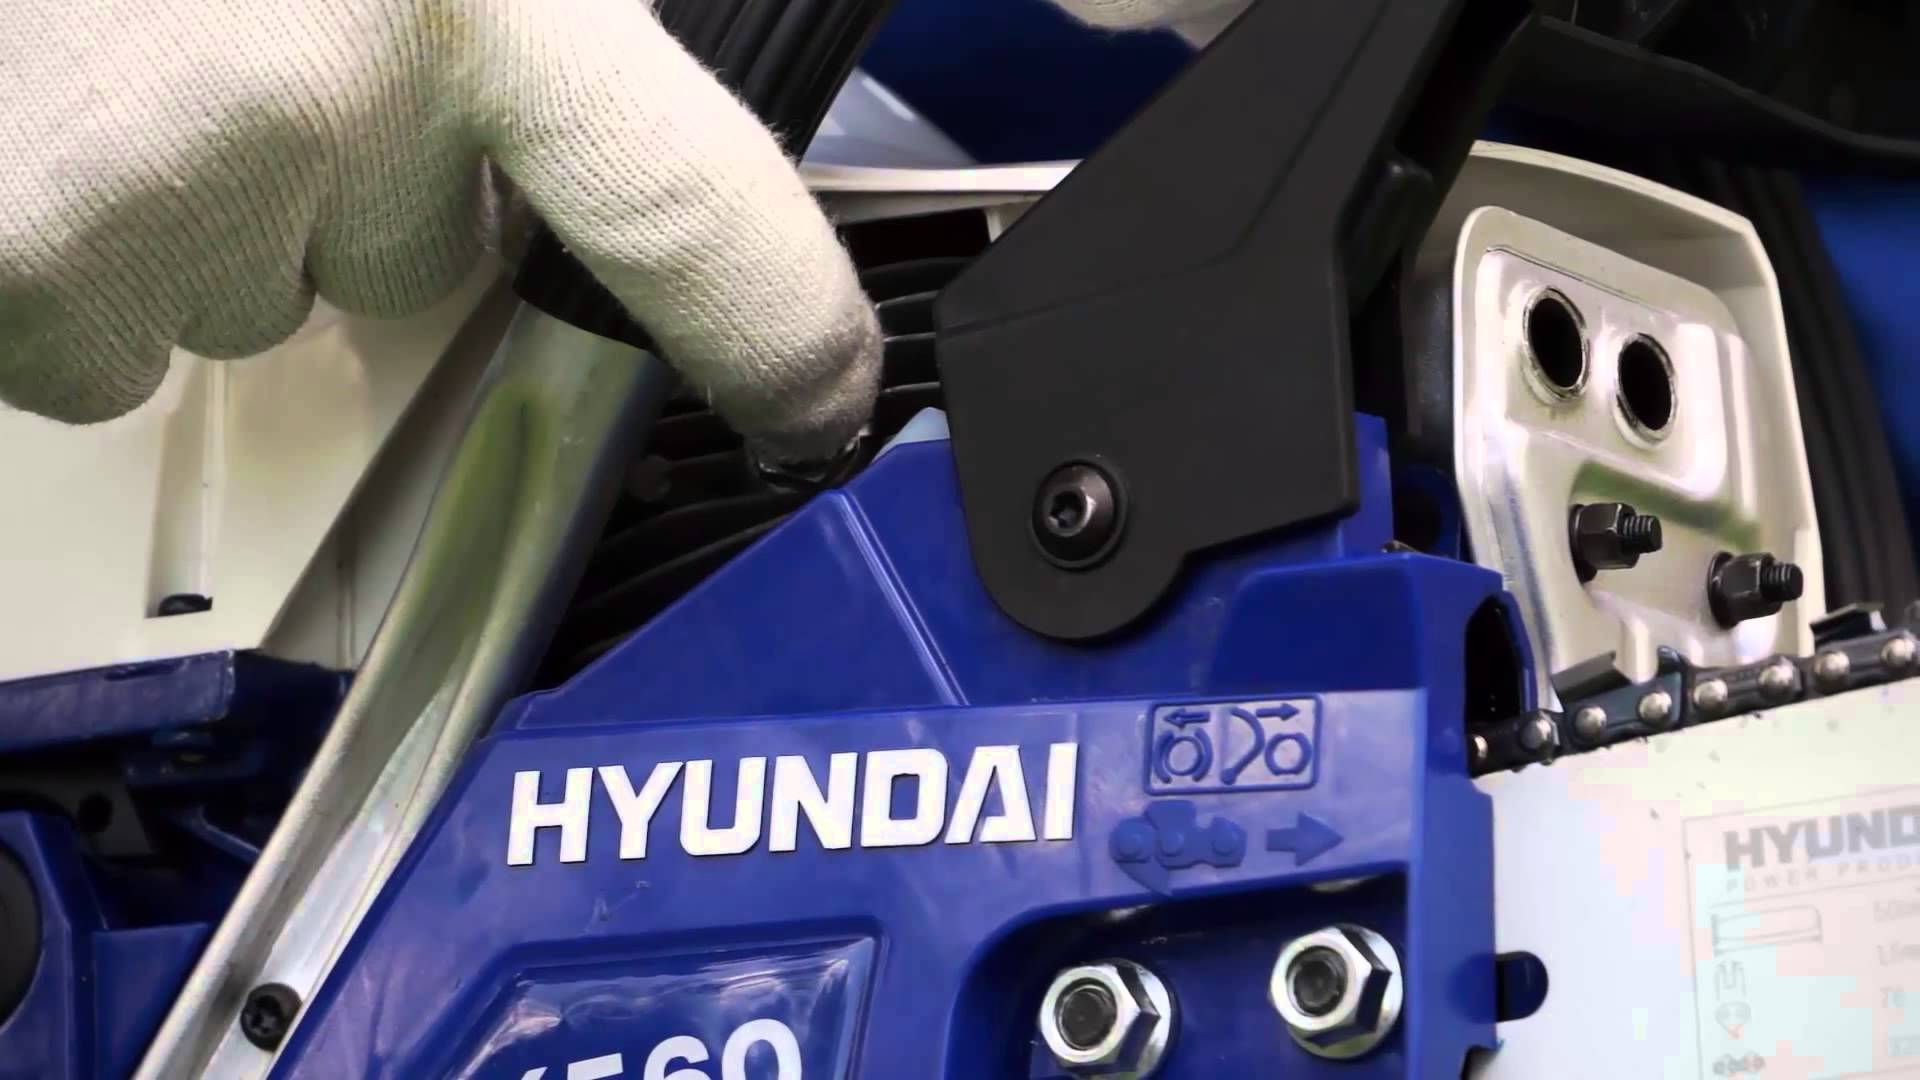 Випробування бензопил Hyundai та досвід: повний огляд модельного ряду бензопил Hyundai